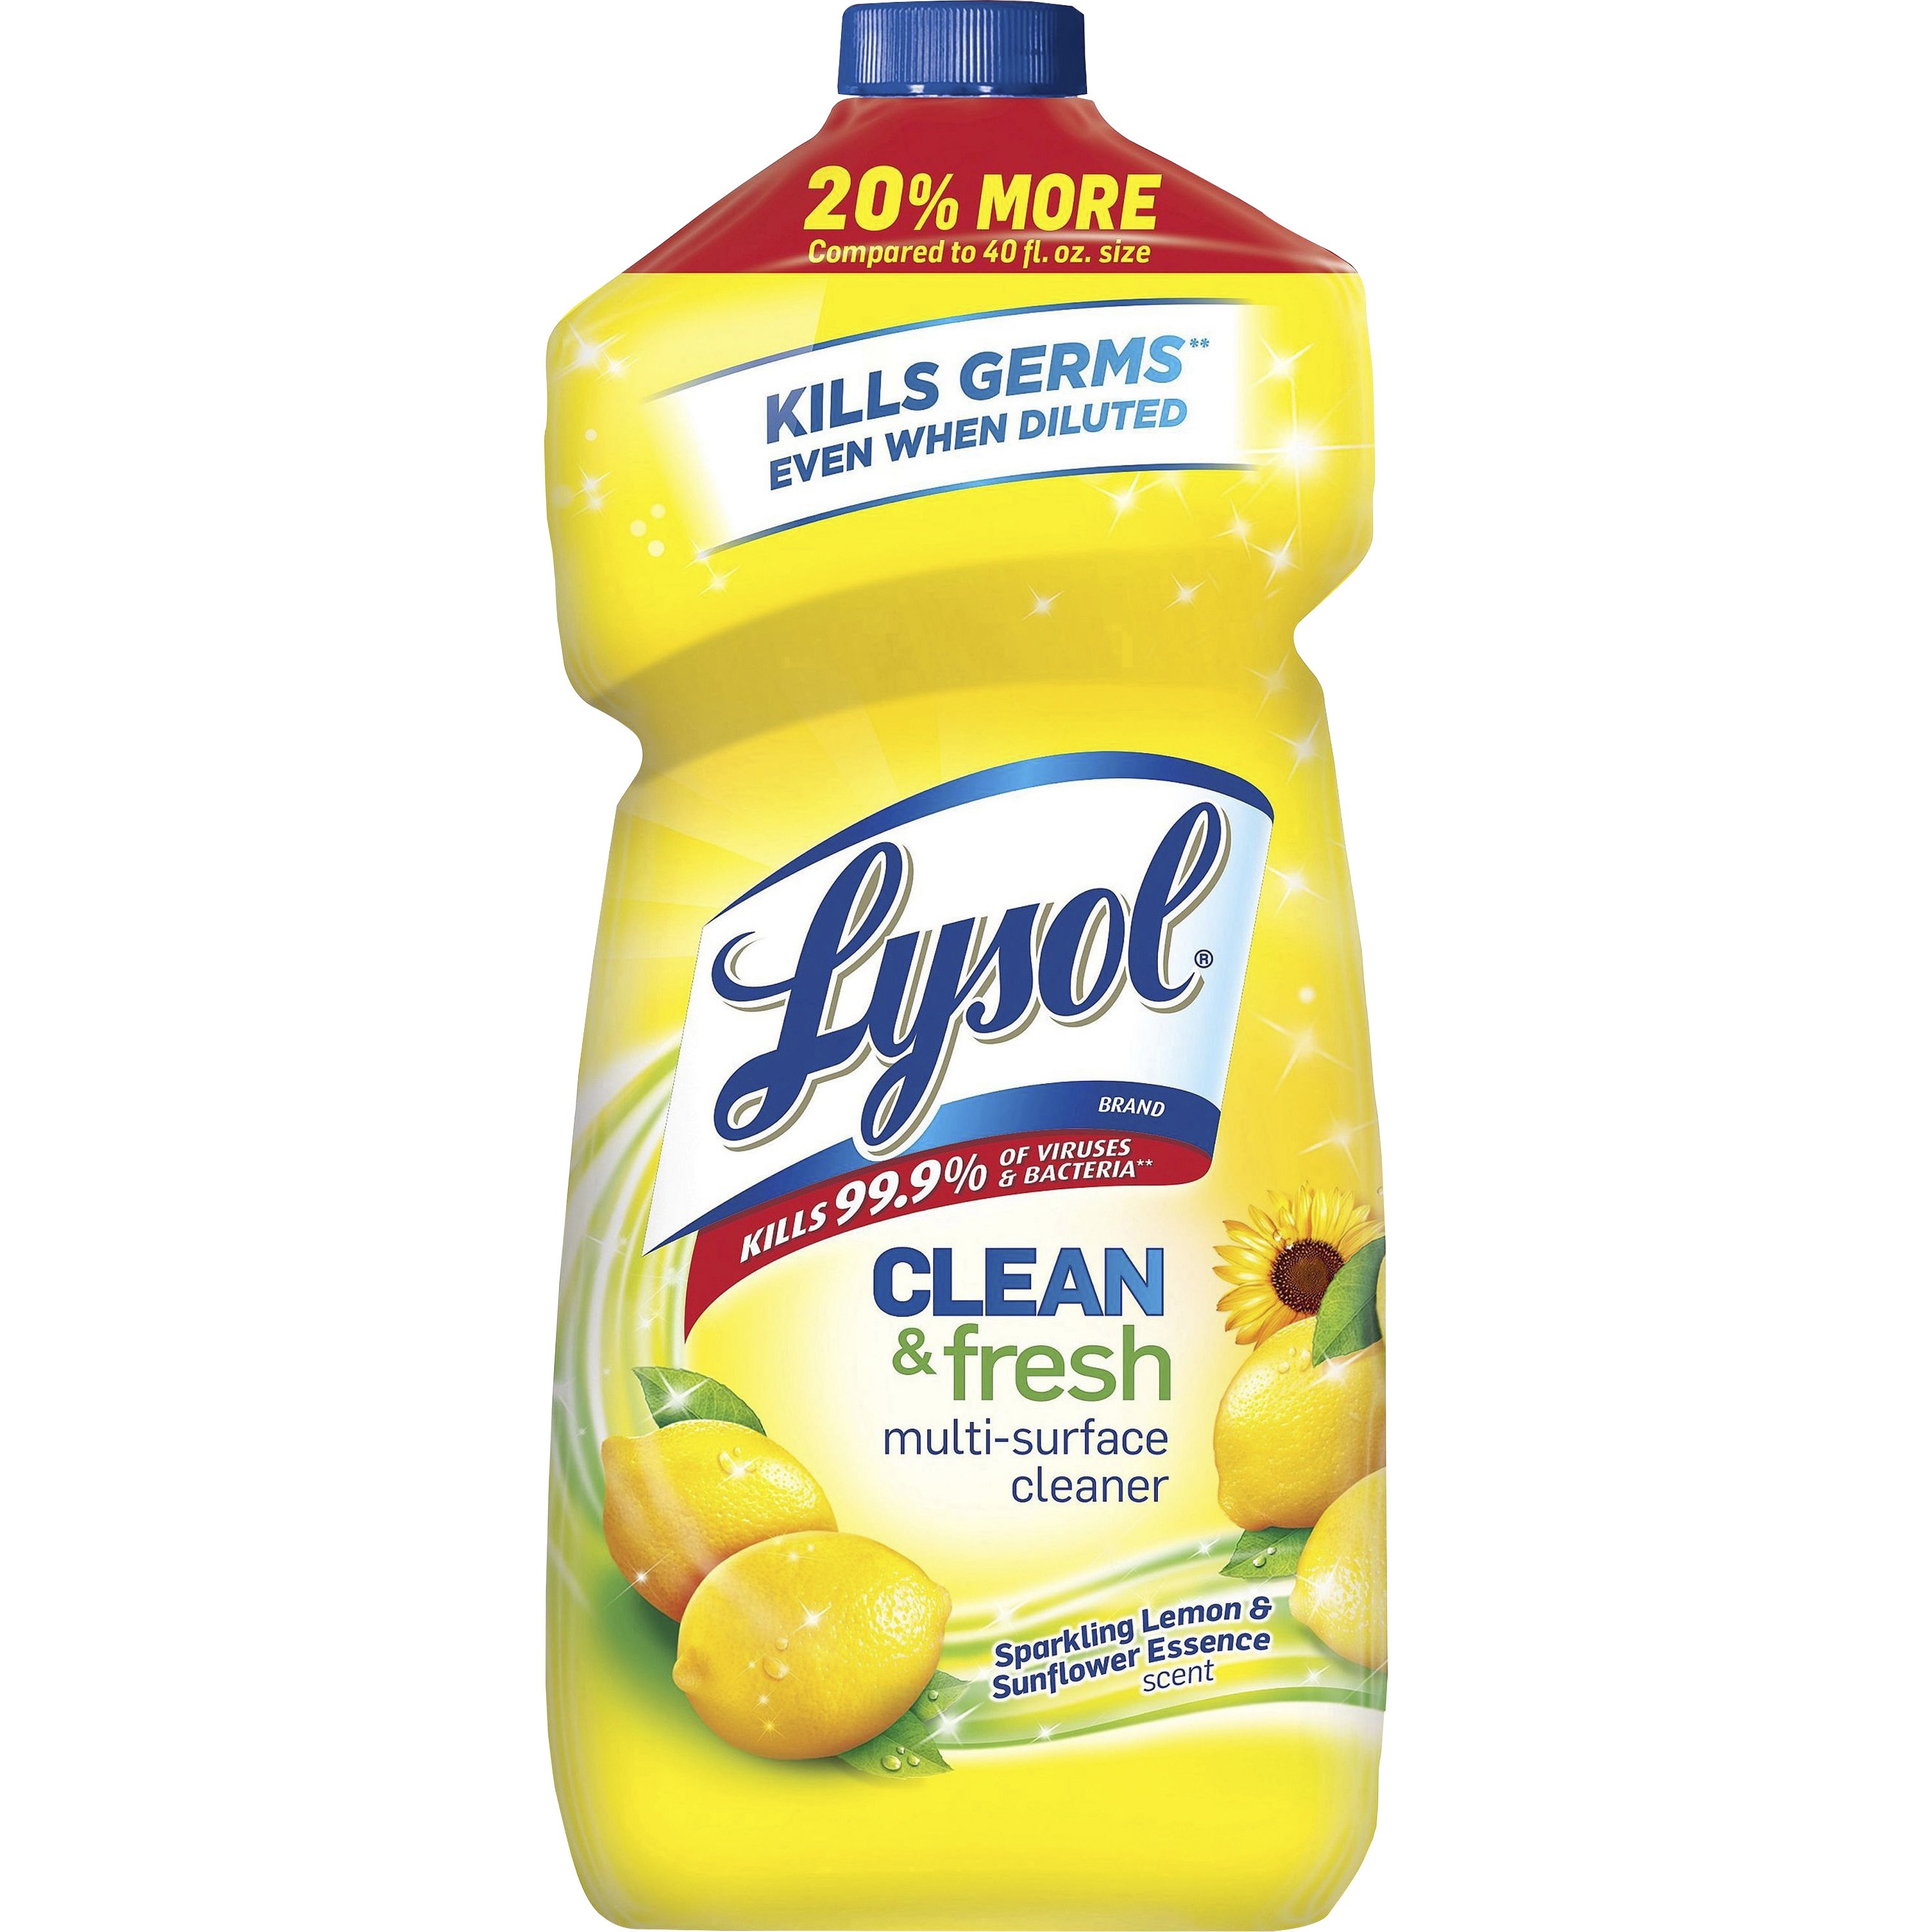 Lysol Bathroom Cleaner, Spray Bottle, 22 oz, N/A RAC90036